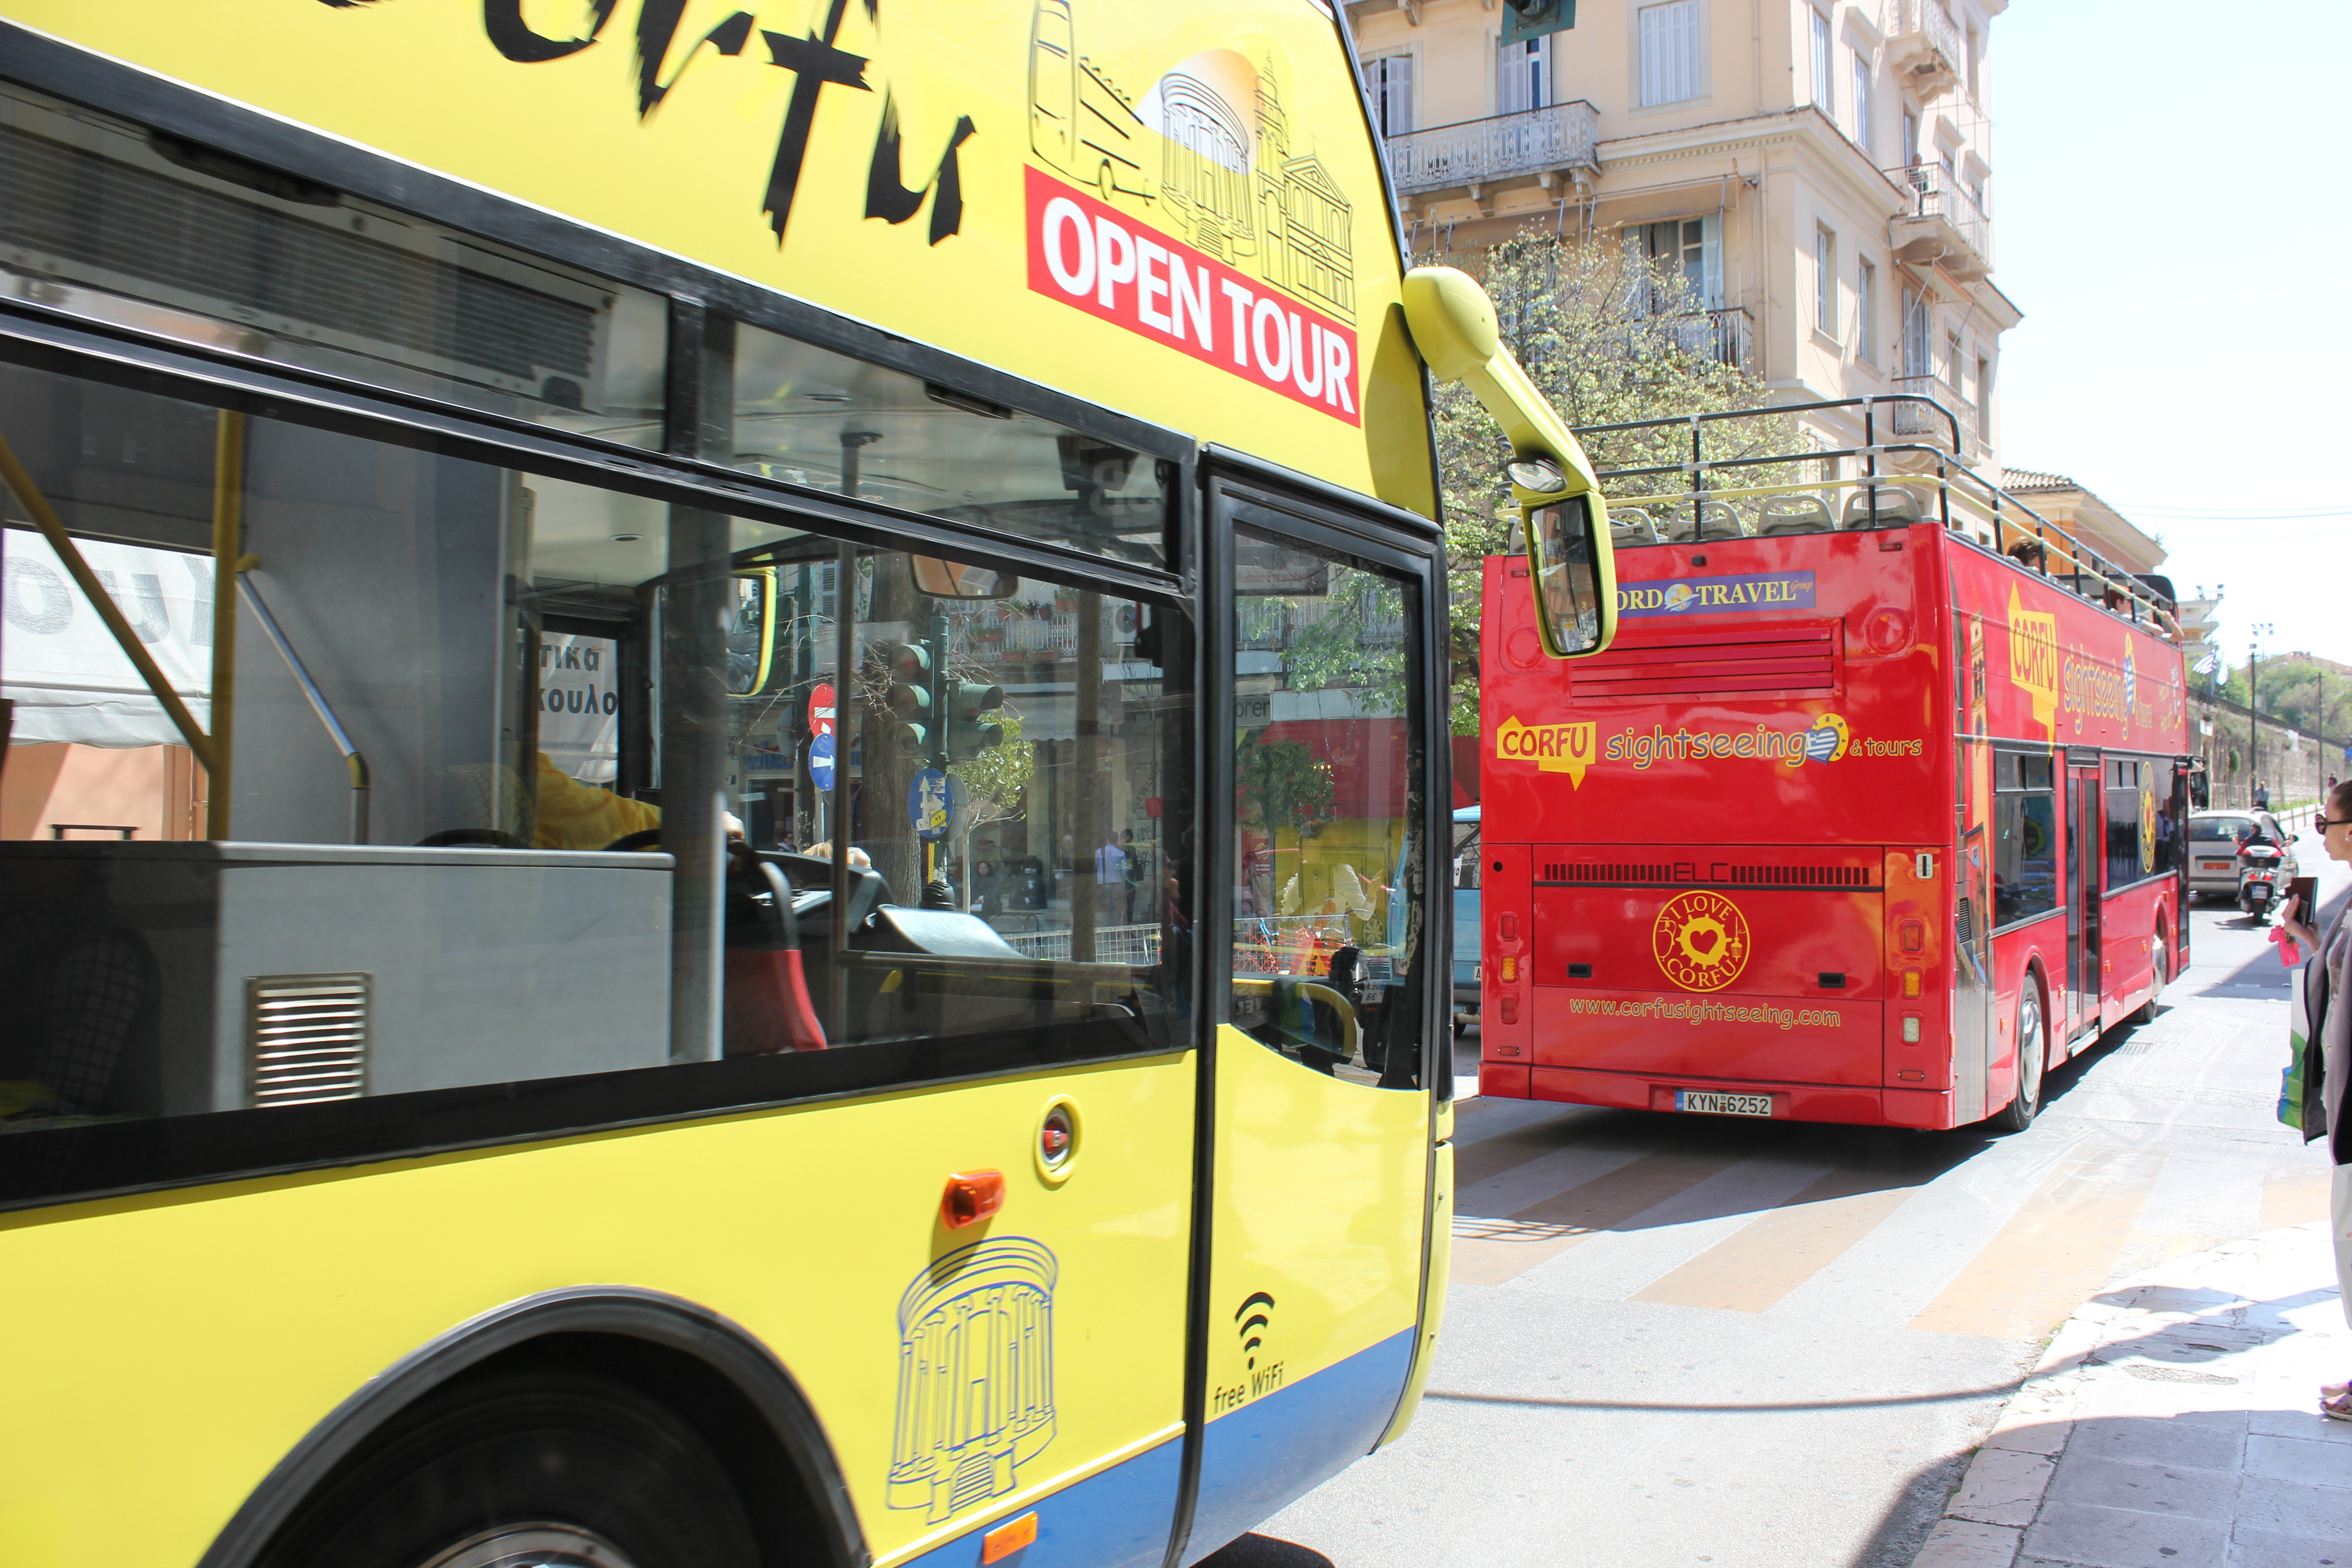 Ιδιοκτήτες τουριστικών λεωφορείων Κέρκυρας: Ζητούν απόσυρση των ανοικτών περιηγητικών